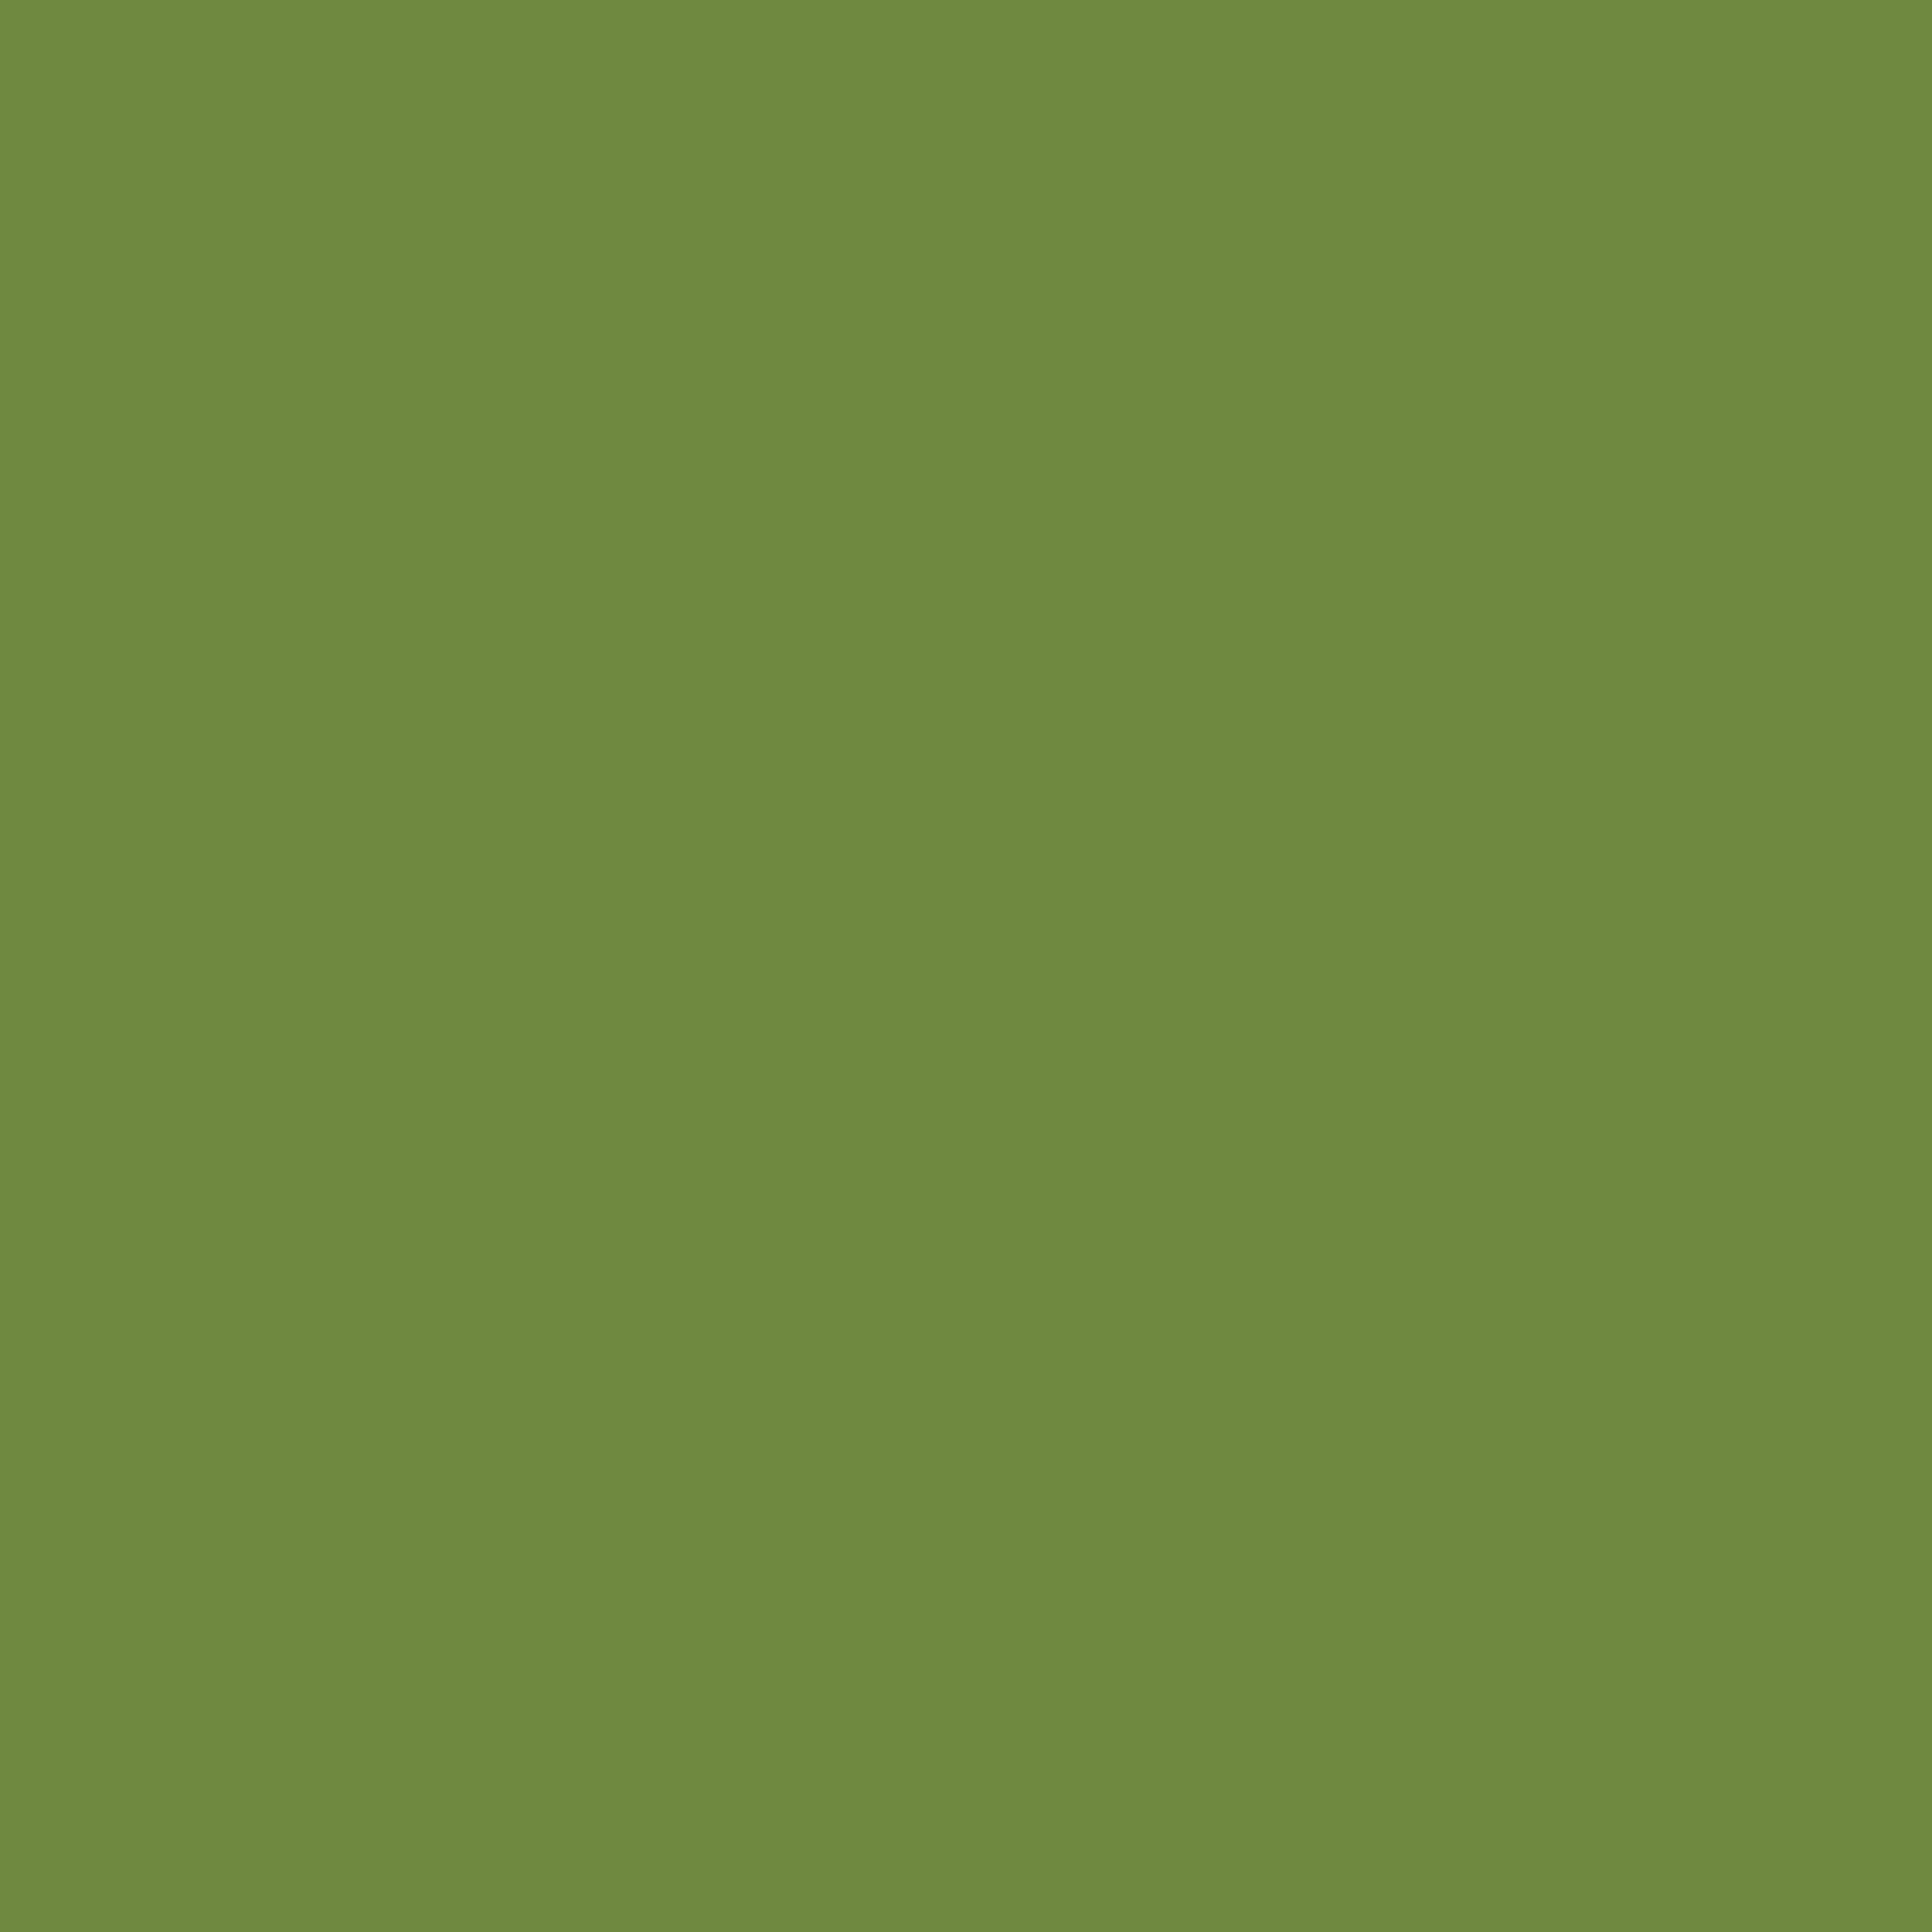 Zelltuchservietten 1/4 Falz, 24 x 24 cm, leaf green